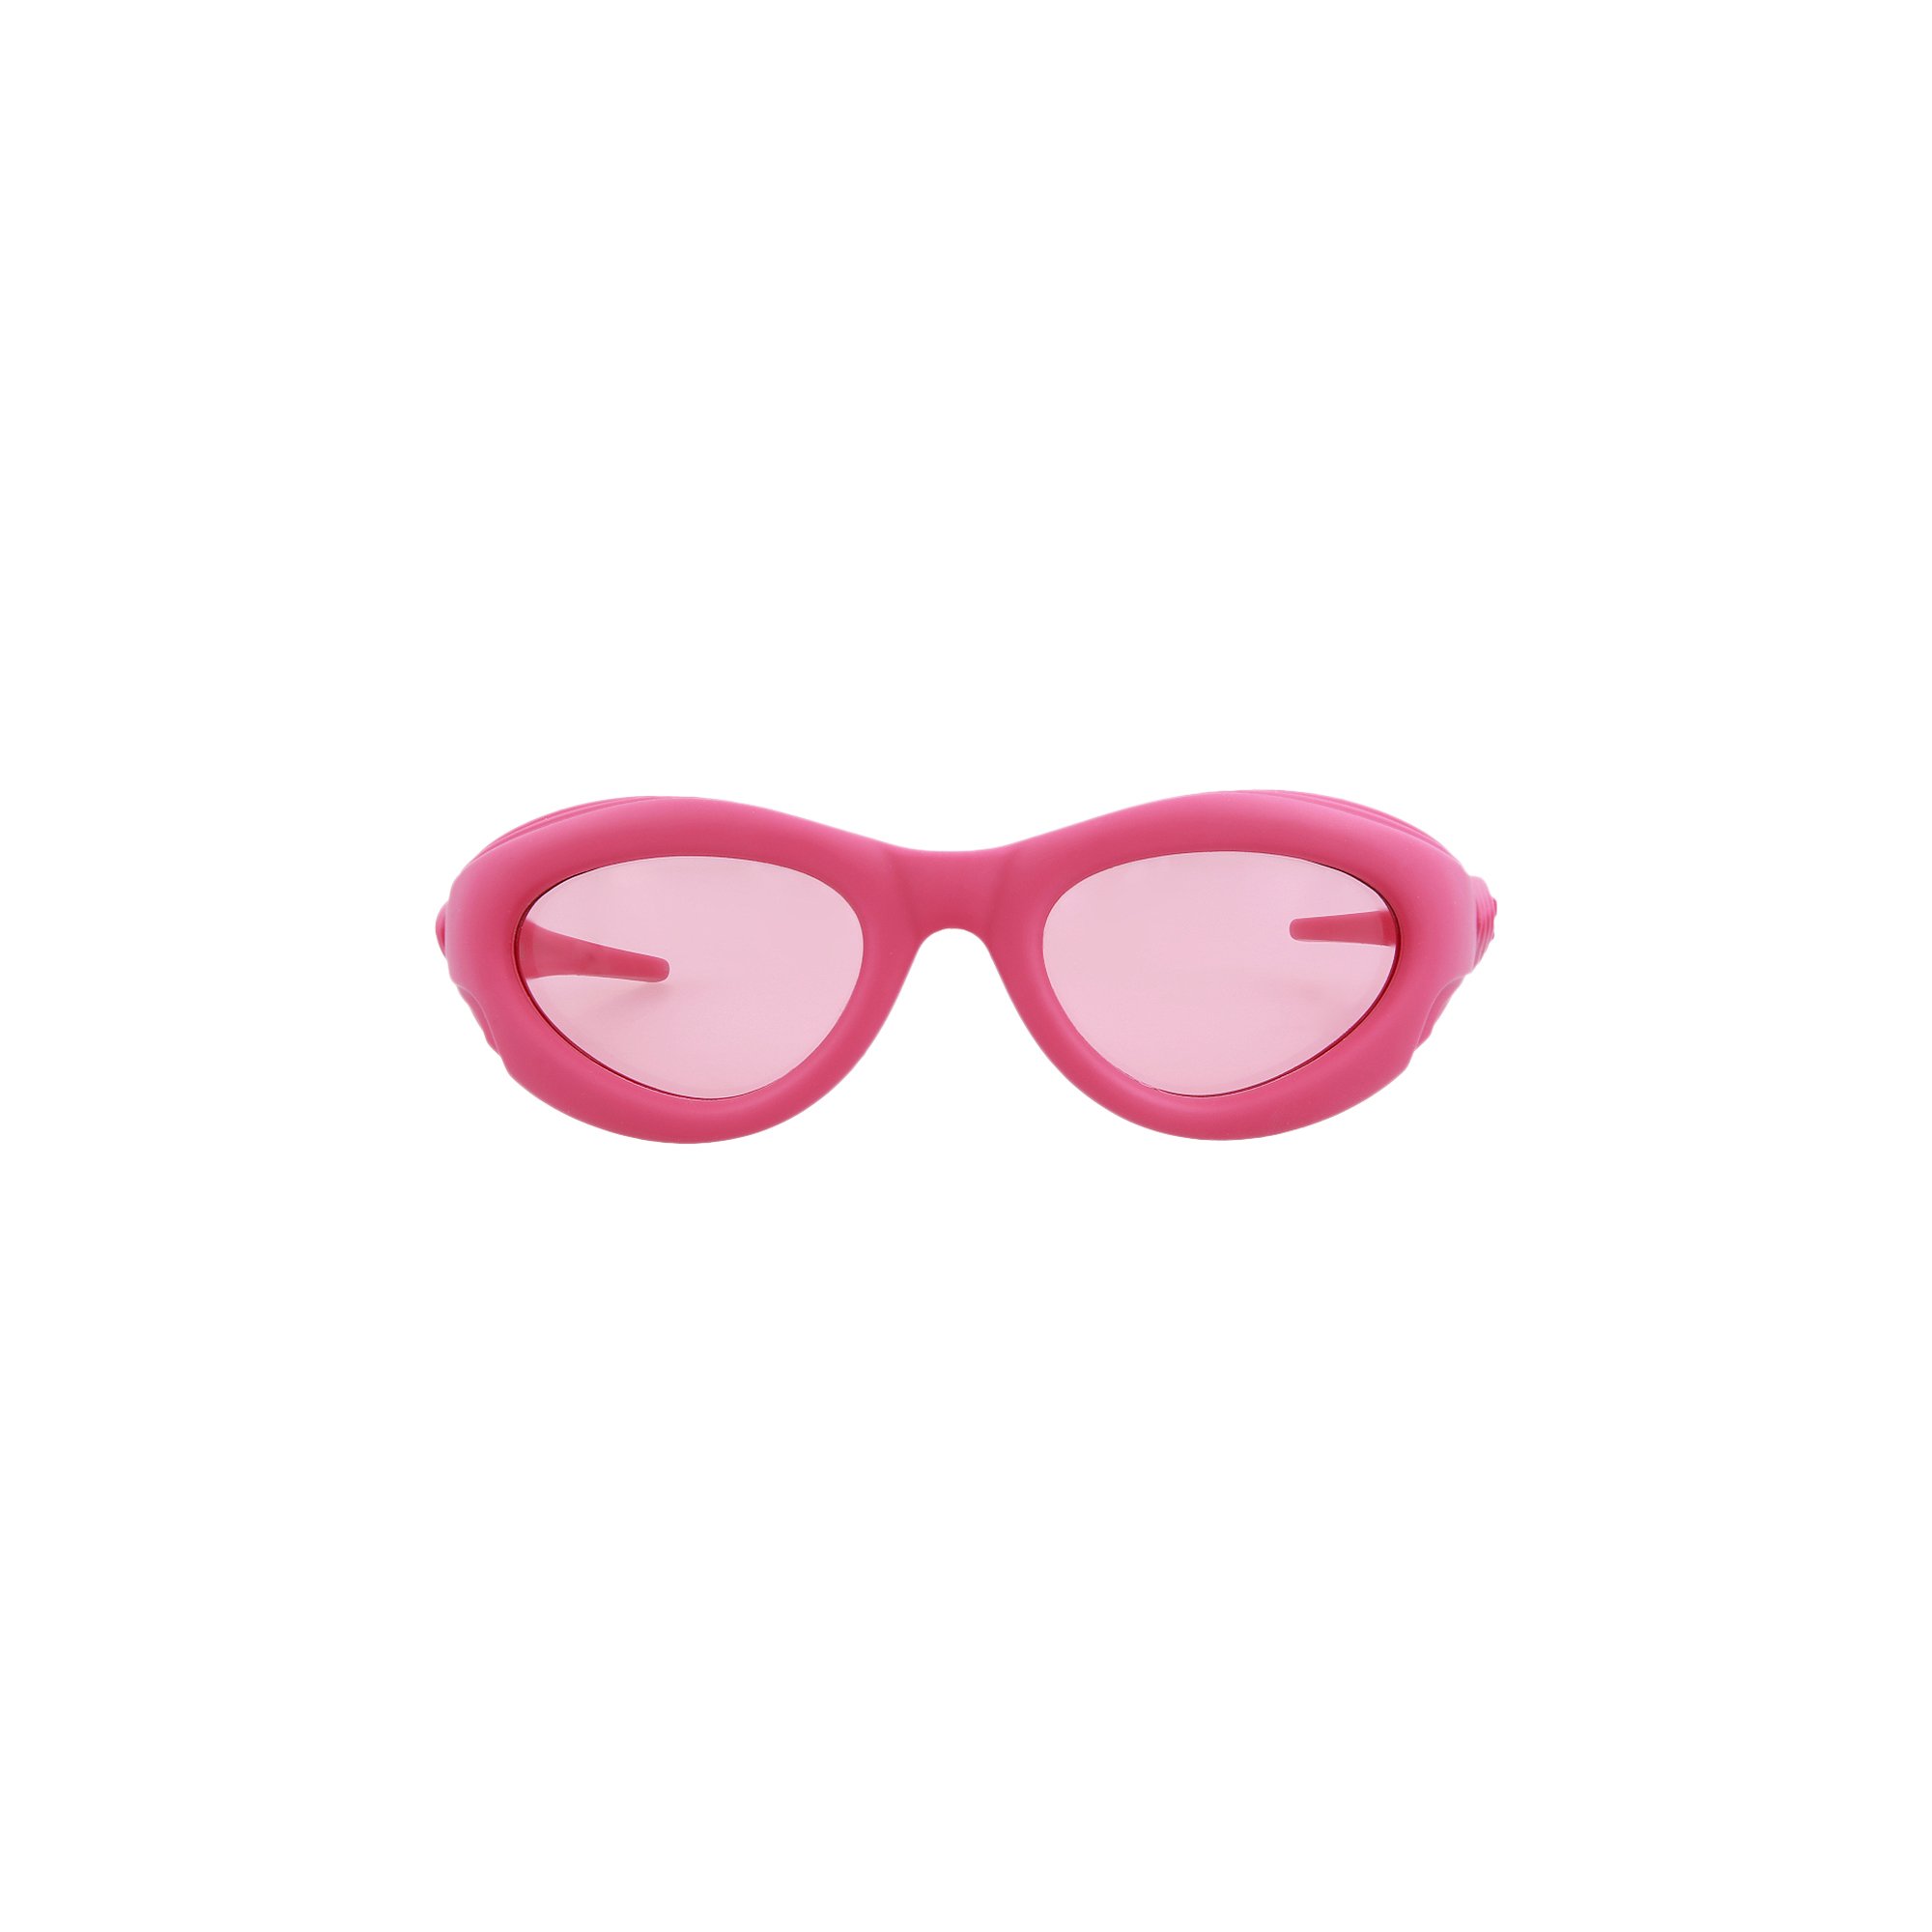 Солнцезащитные очки кошачий глаз Bottega Veneta, розовые солнцезащитные очки кошачий глаз bottega veneta розовые